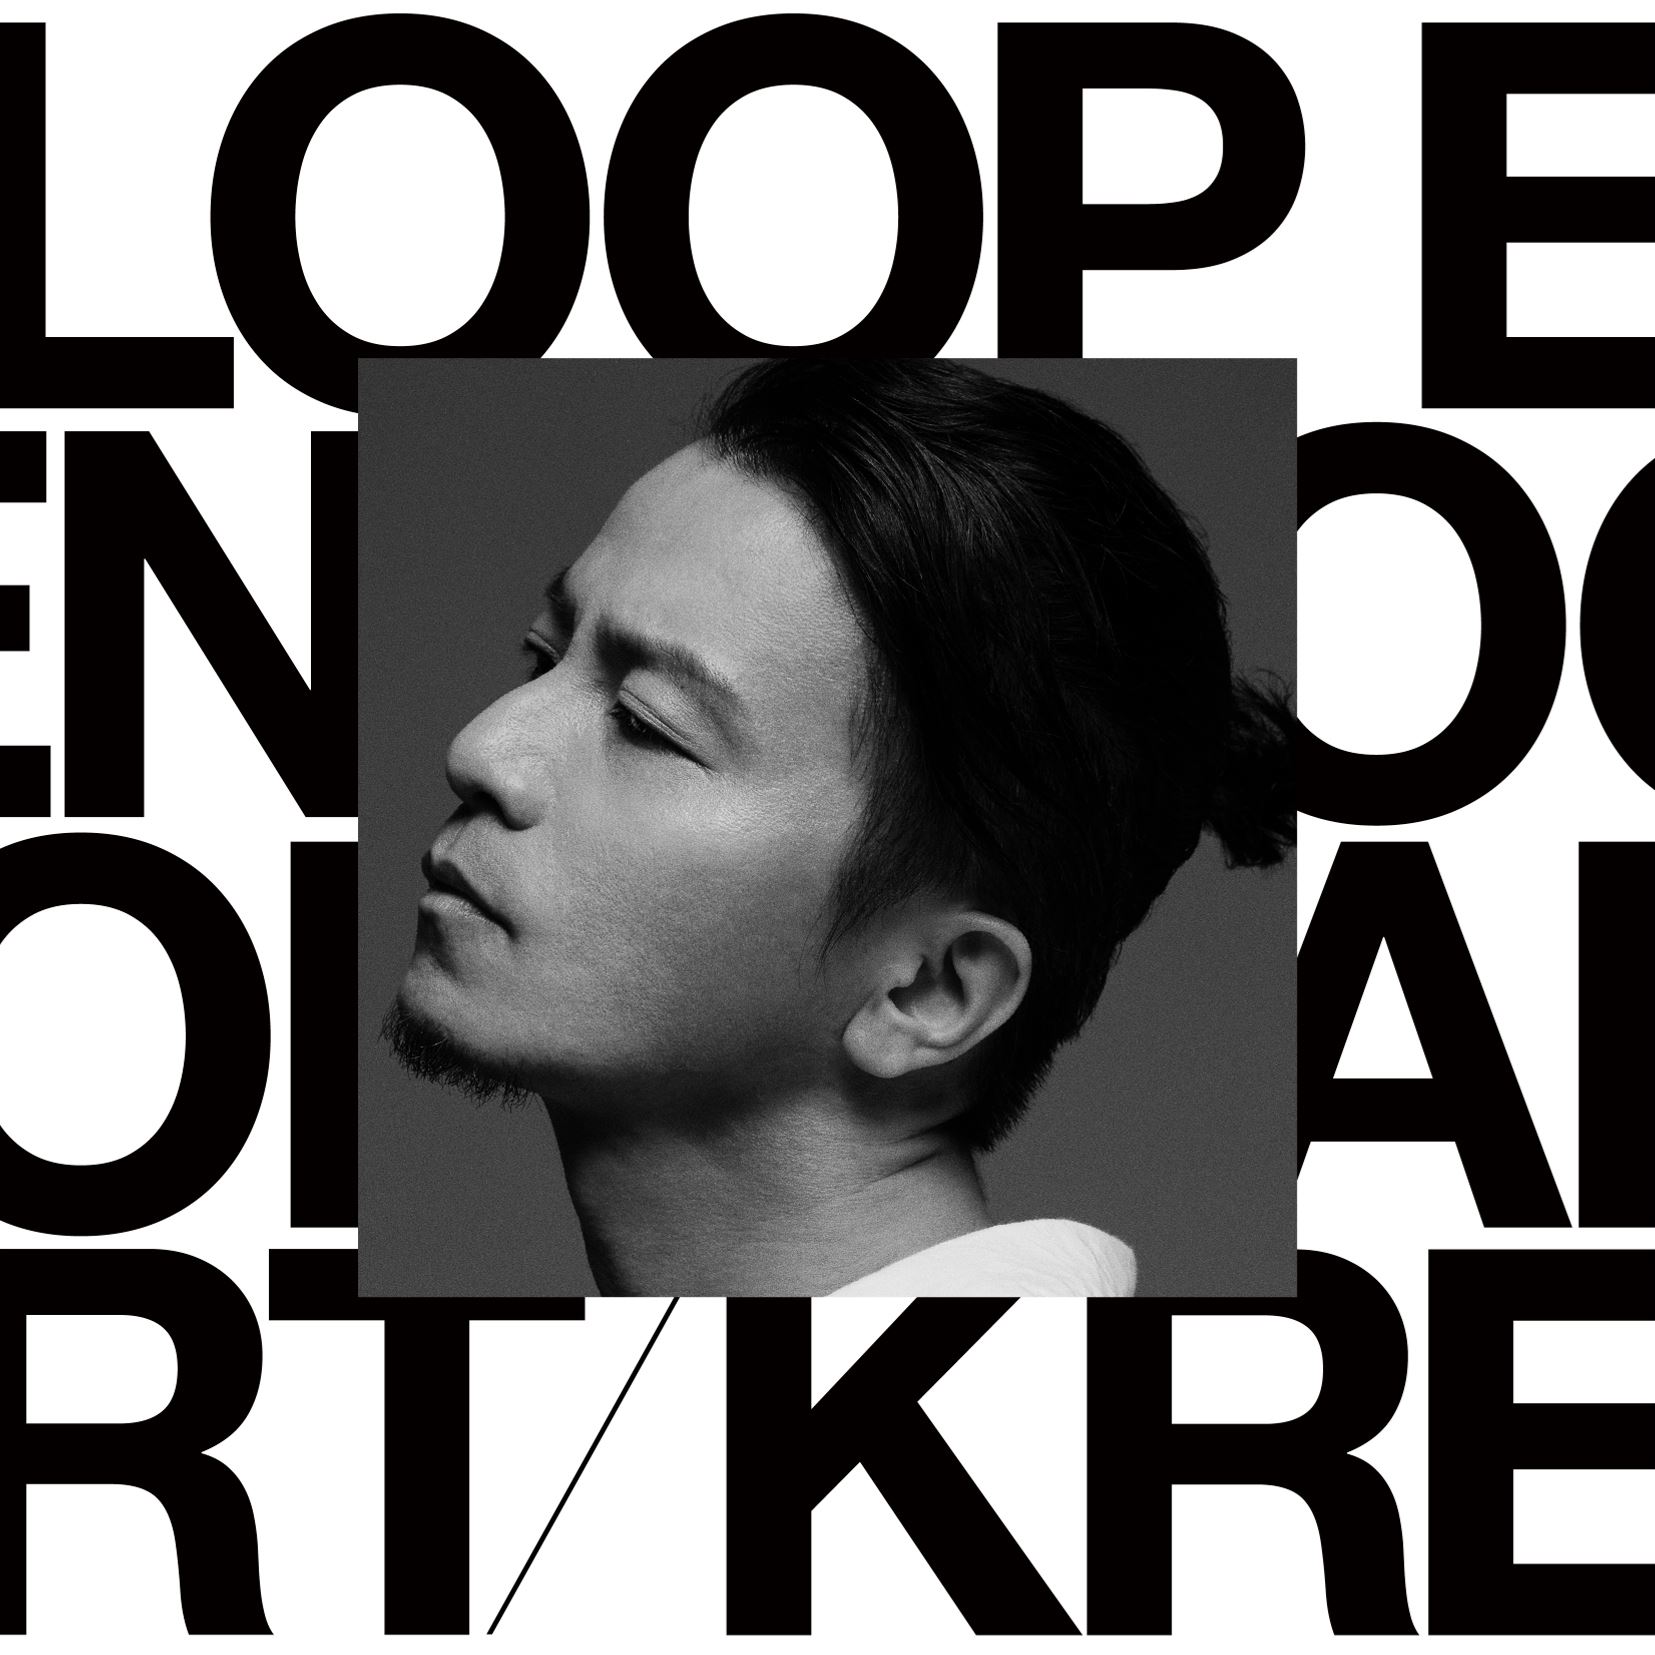 KREVA New Album『LOOP END / LOOP START』ジャケット